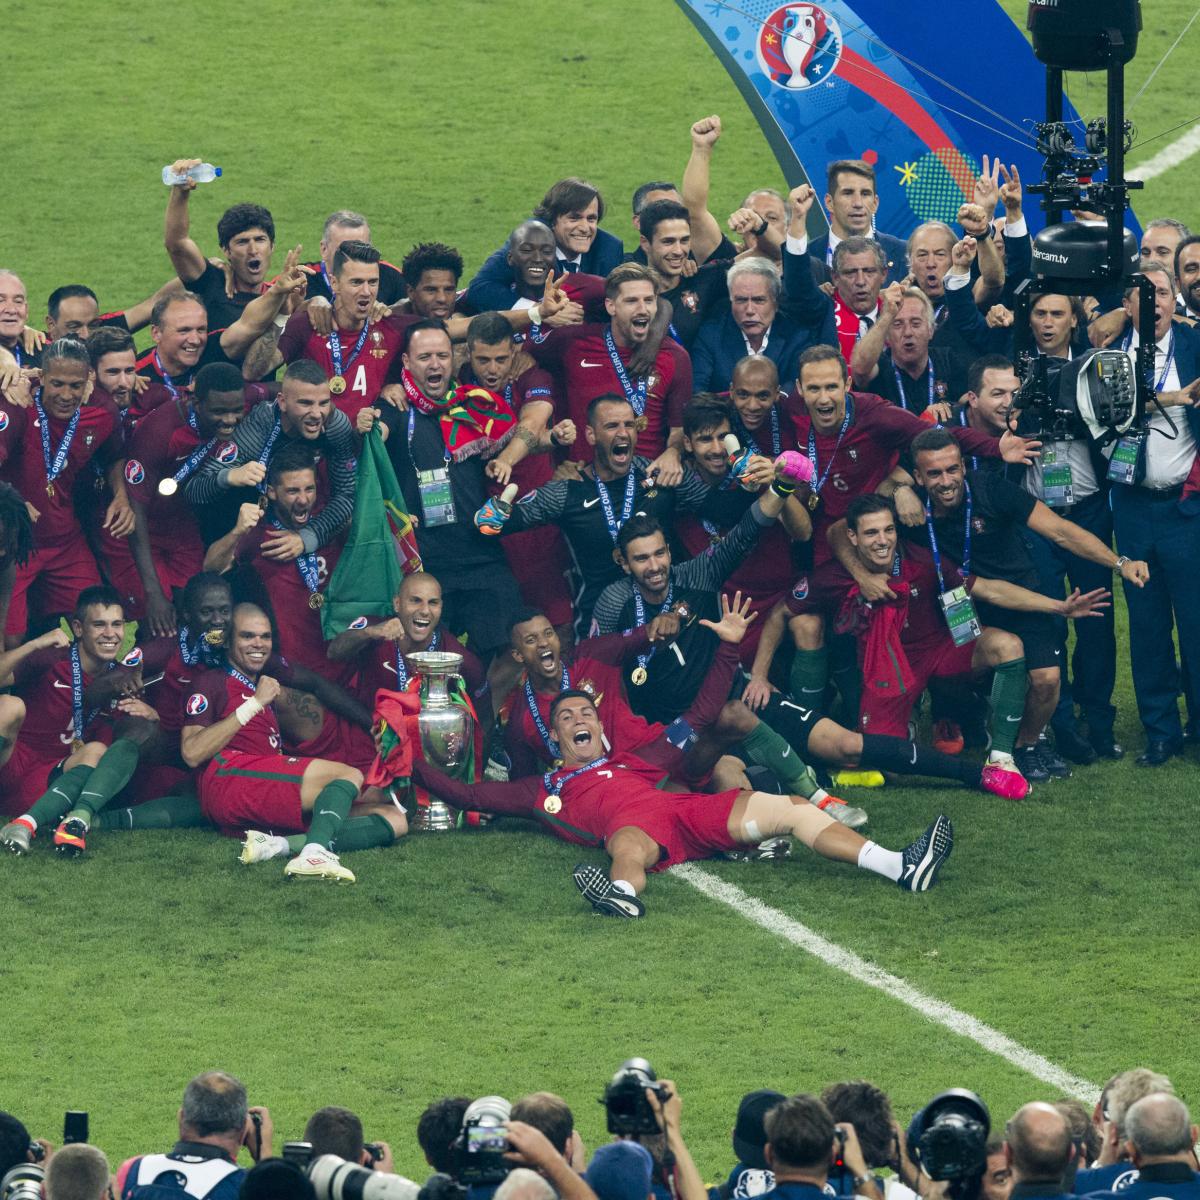 Portuguese champion leads the field